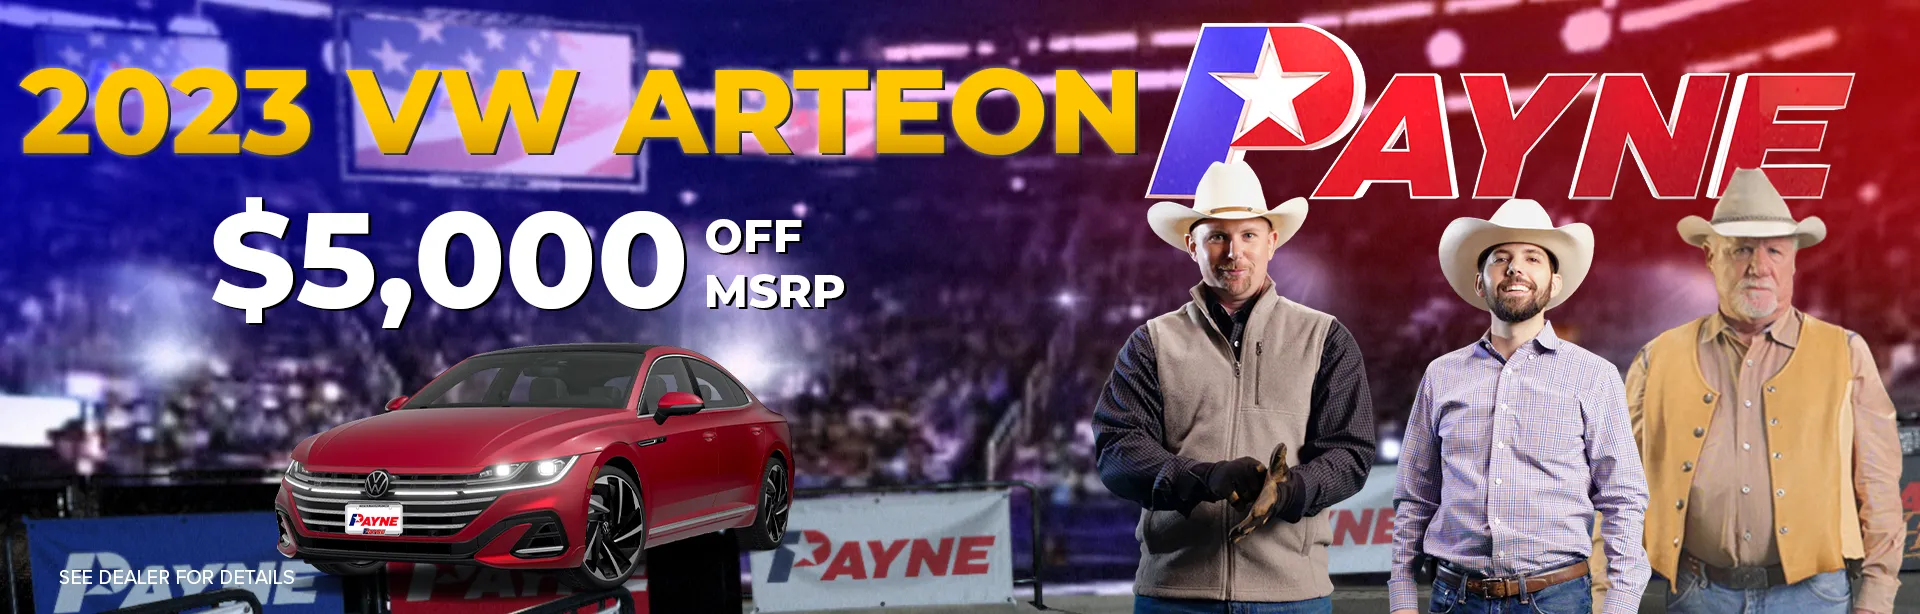 Get $5,000 off MSRP on a 2023 VW Arteon